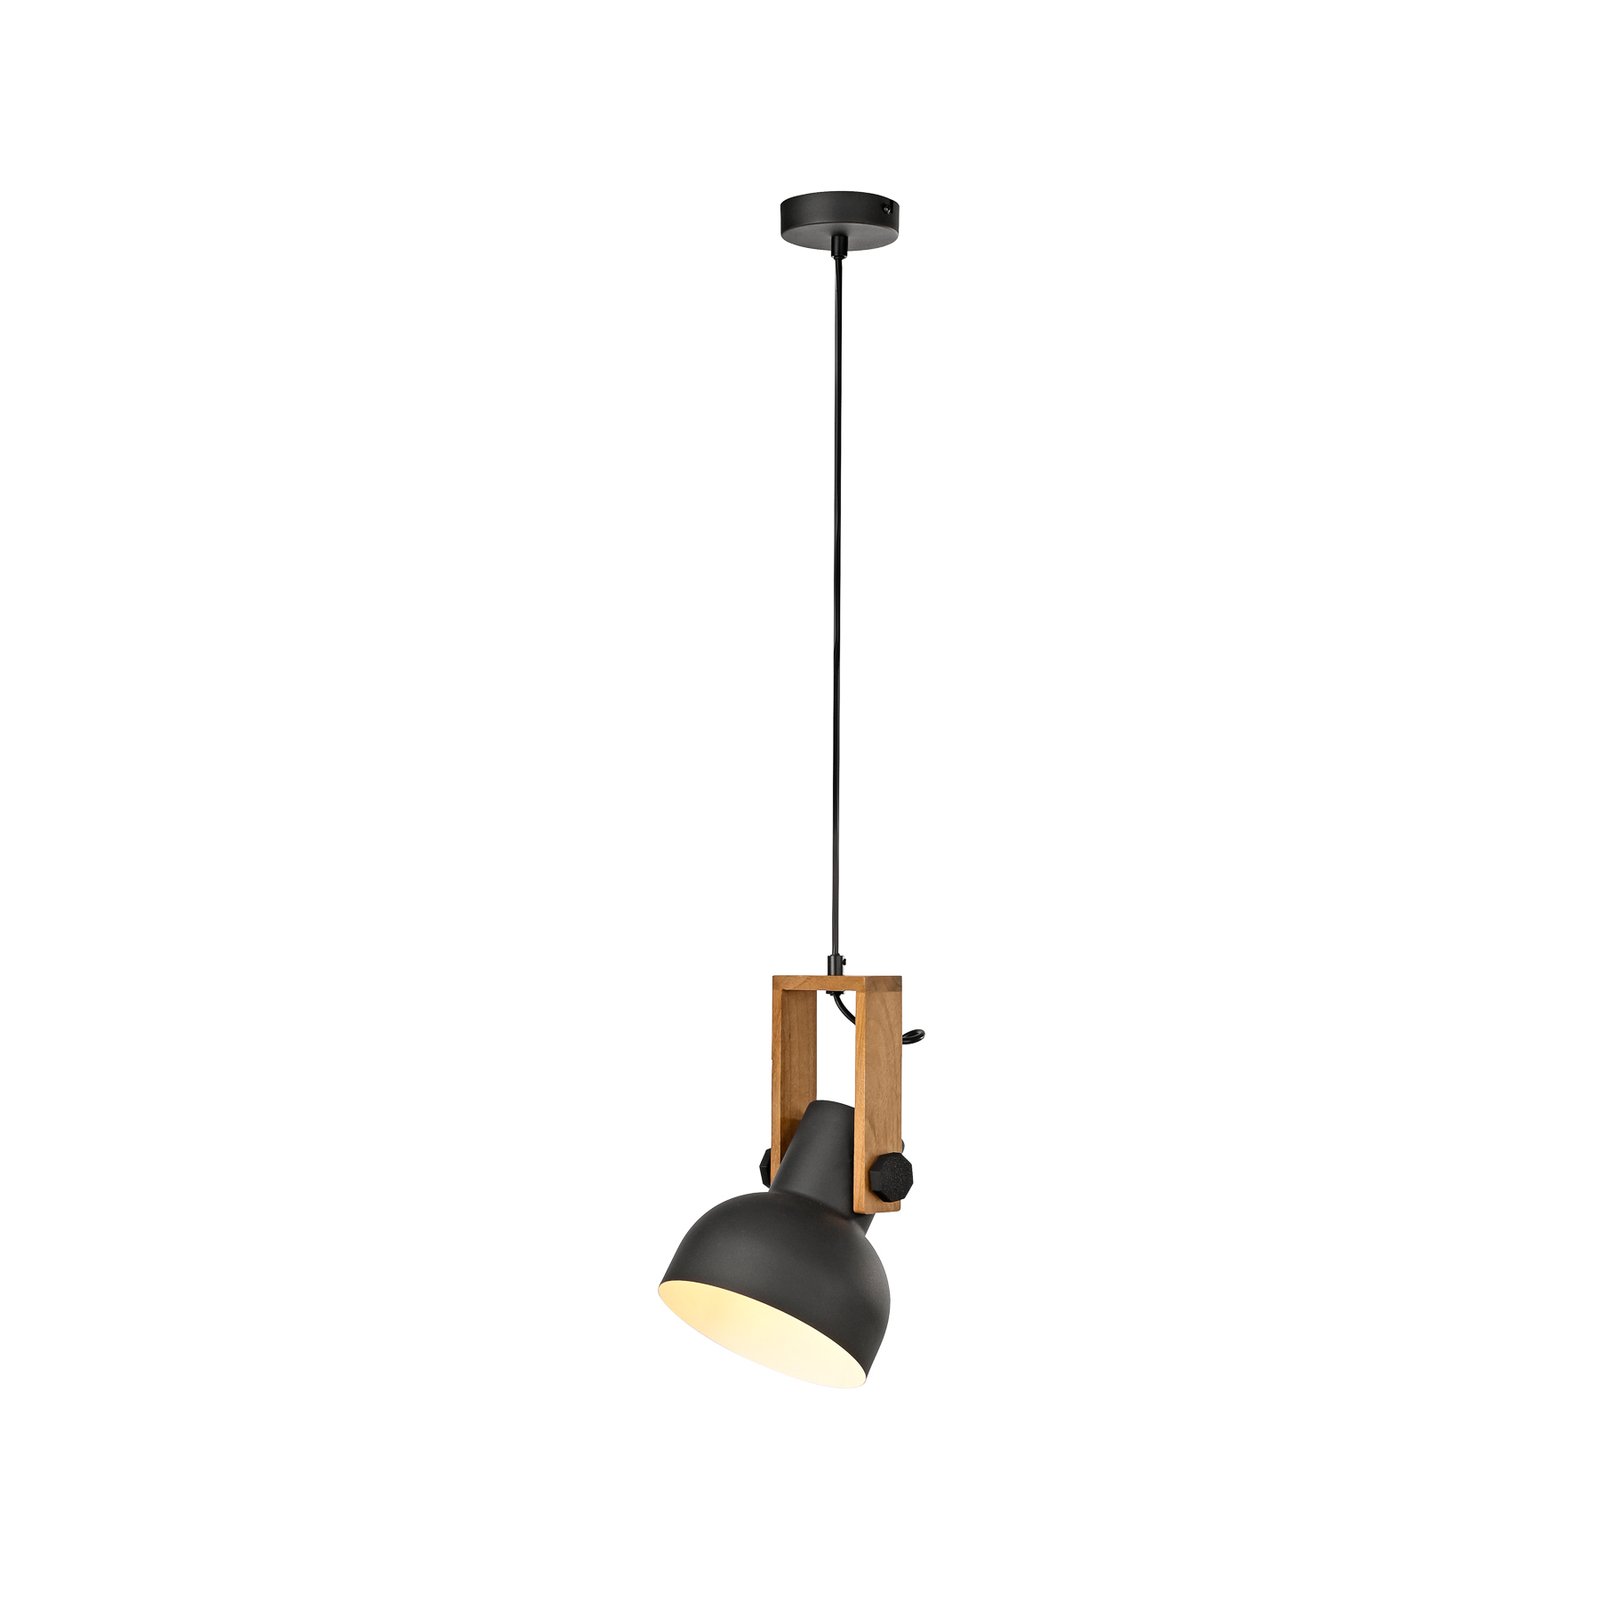 JUST LIGHT. Cup 2.0 hanglamp, Ø16cm, 1-lamp, zwart